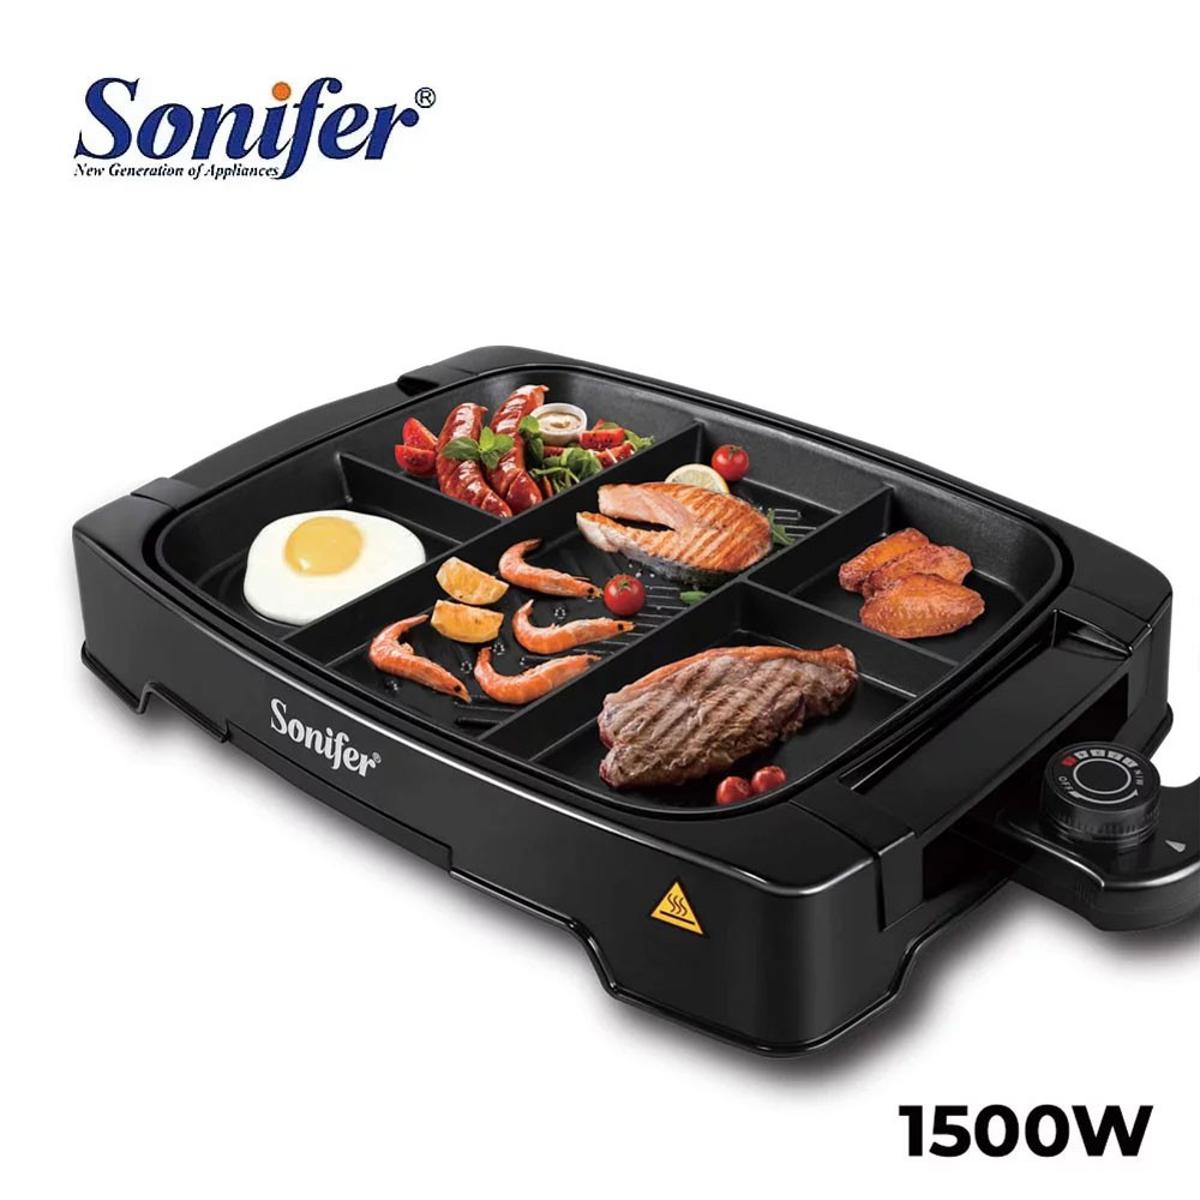 Sonifer 1500W Electric Grills SF-6074